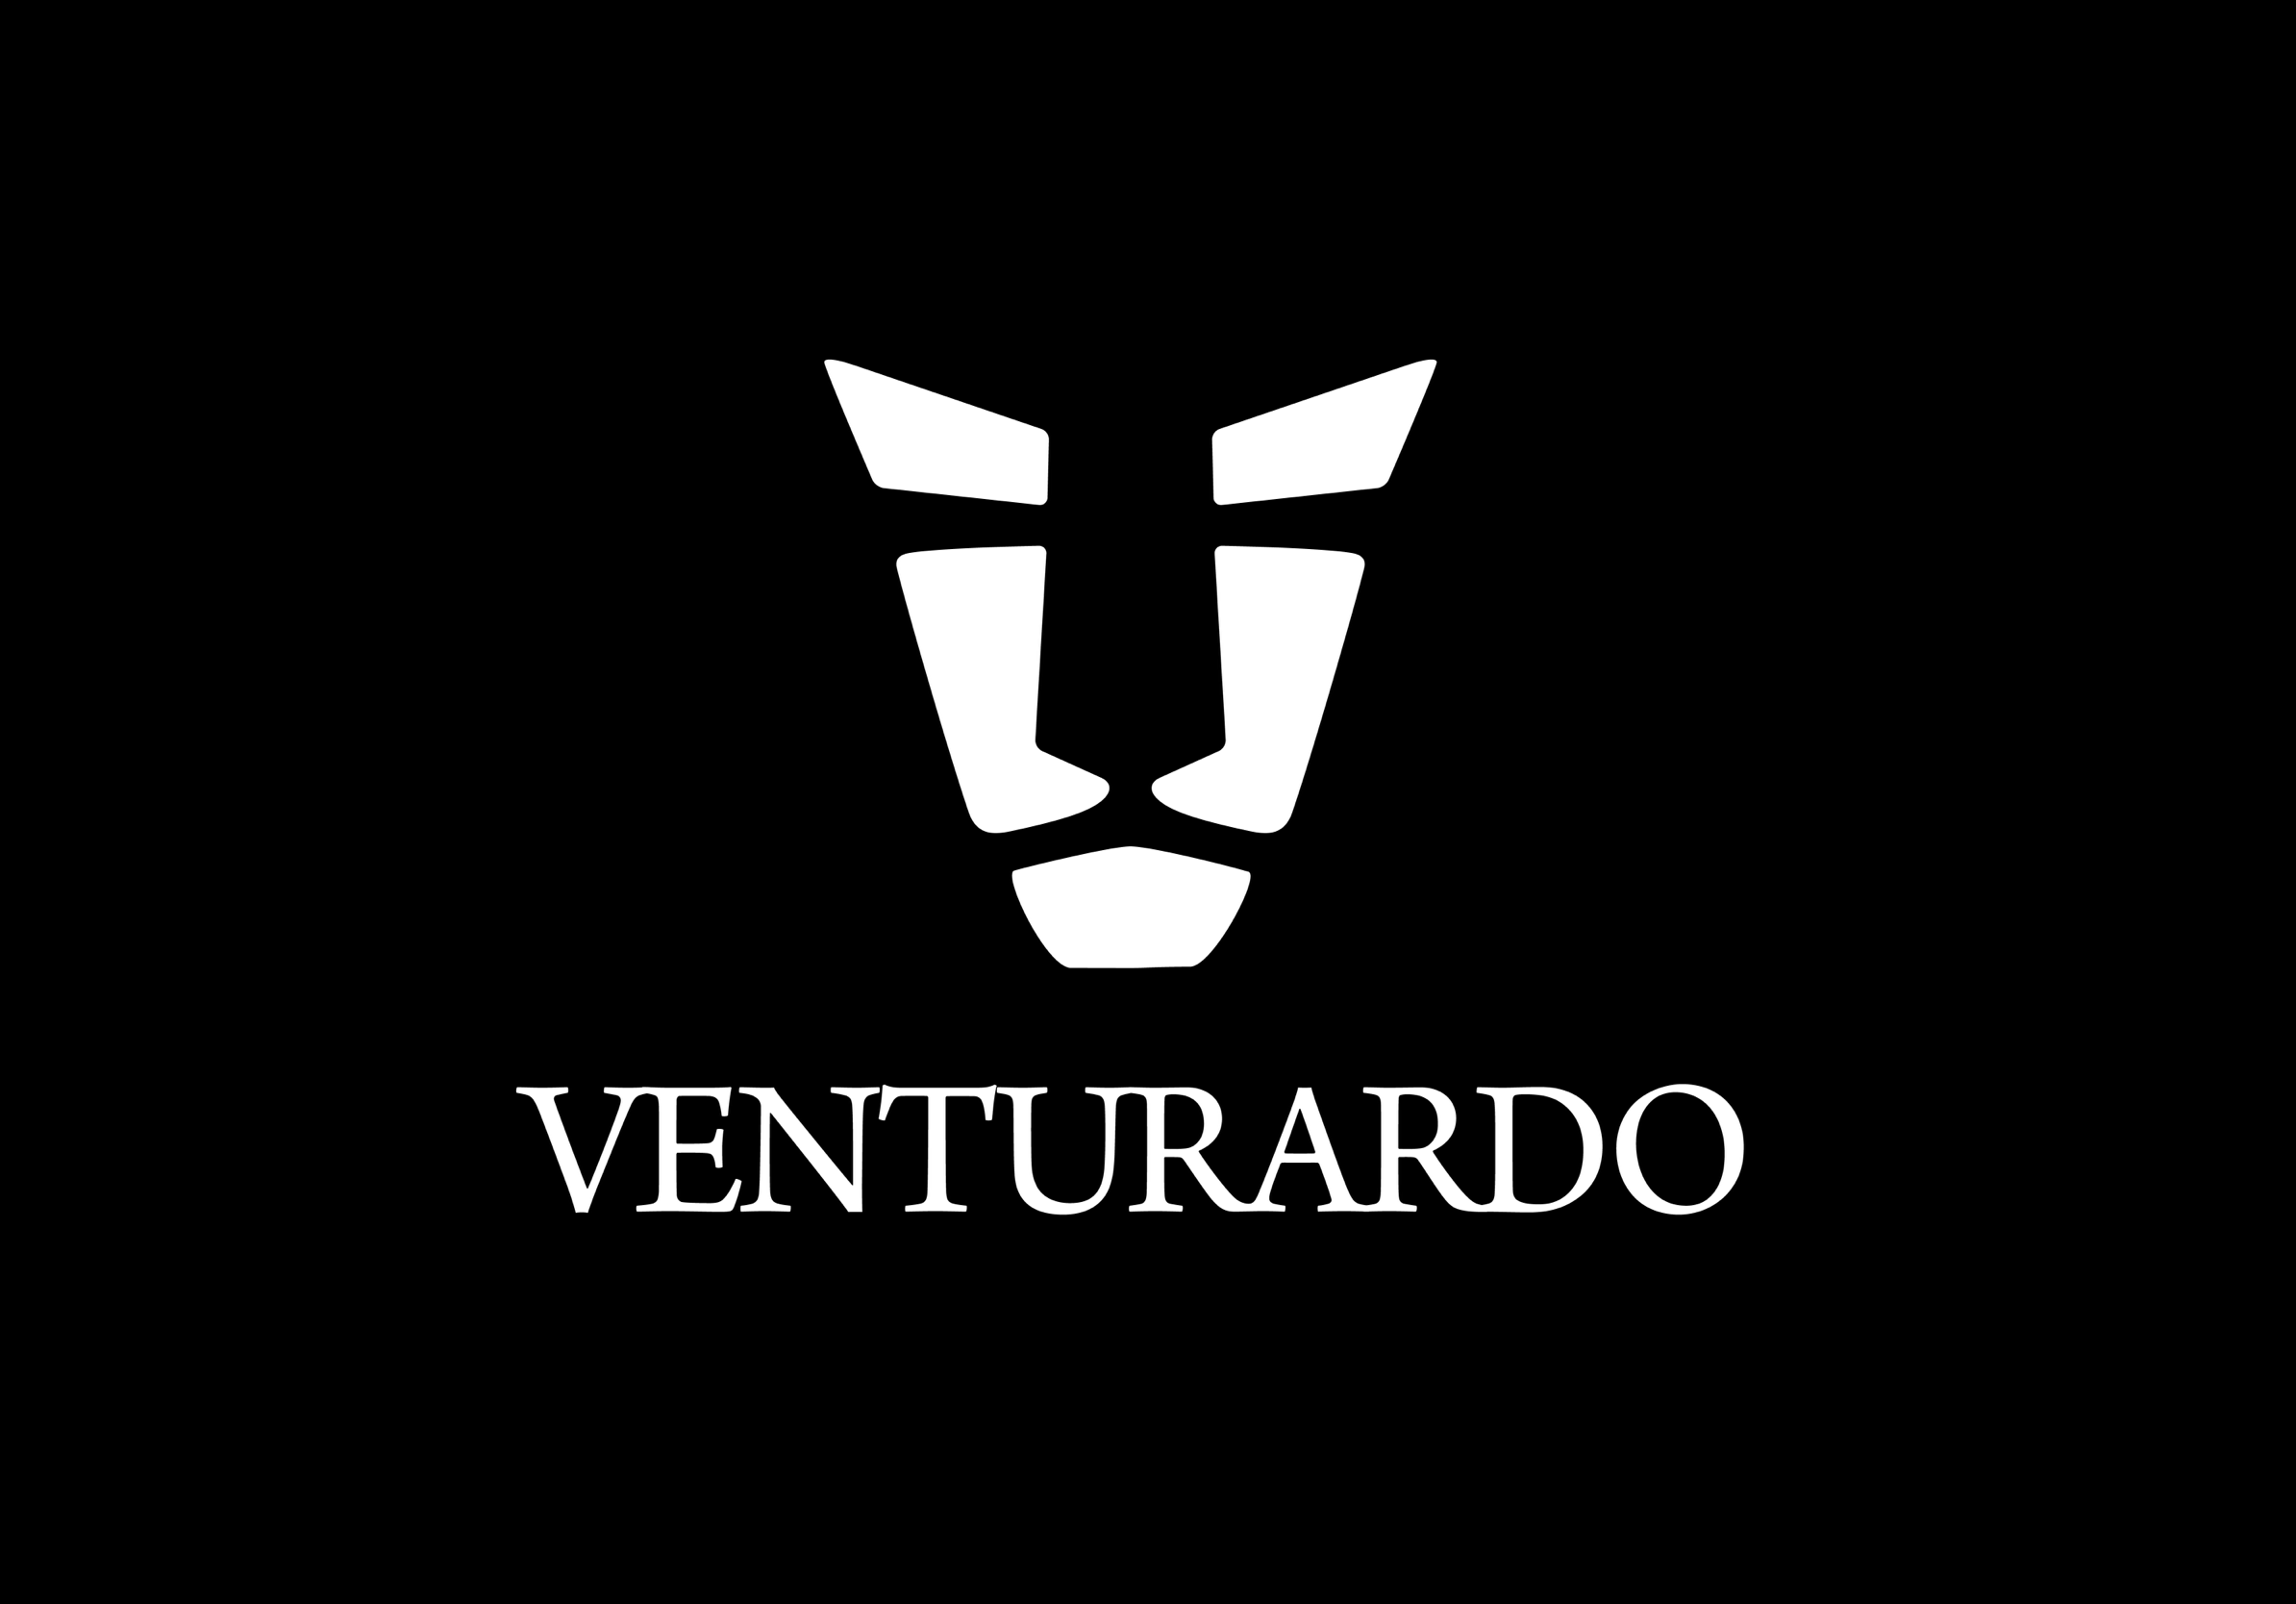 Venturardo Entertainment, LLC (c) 2021